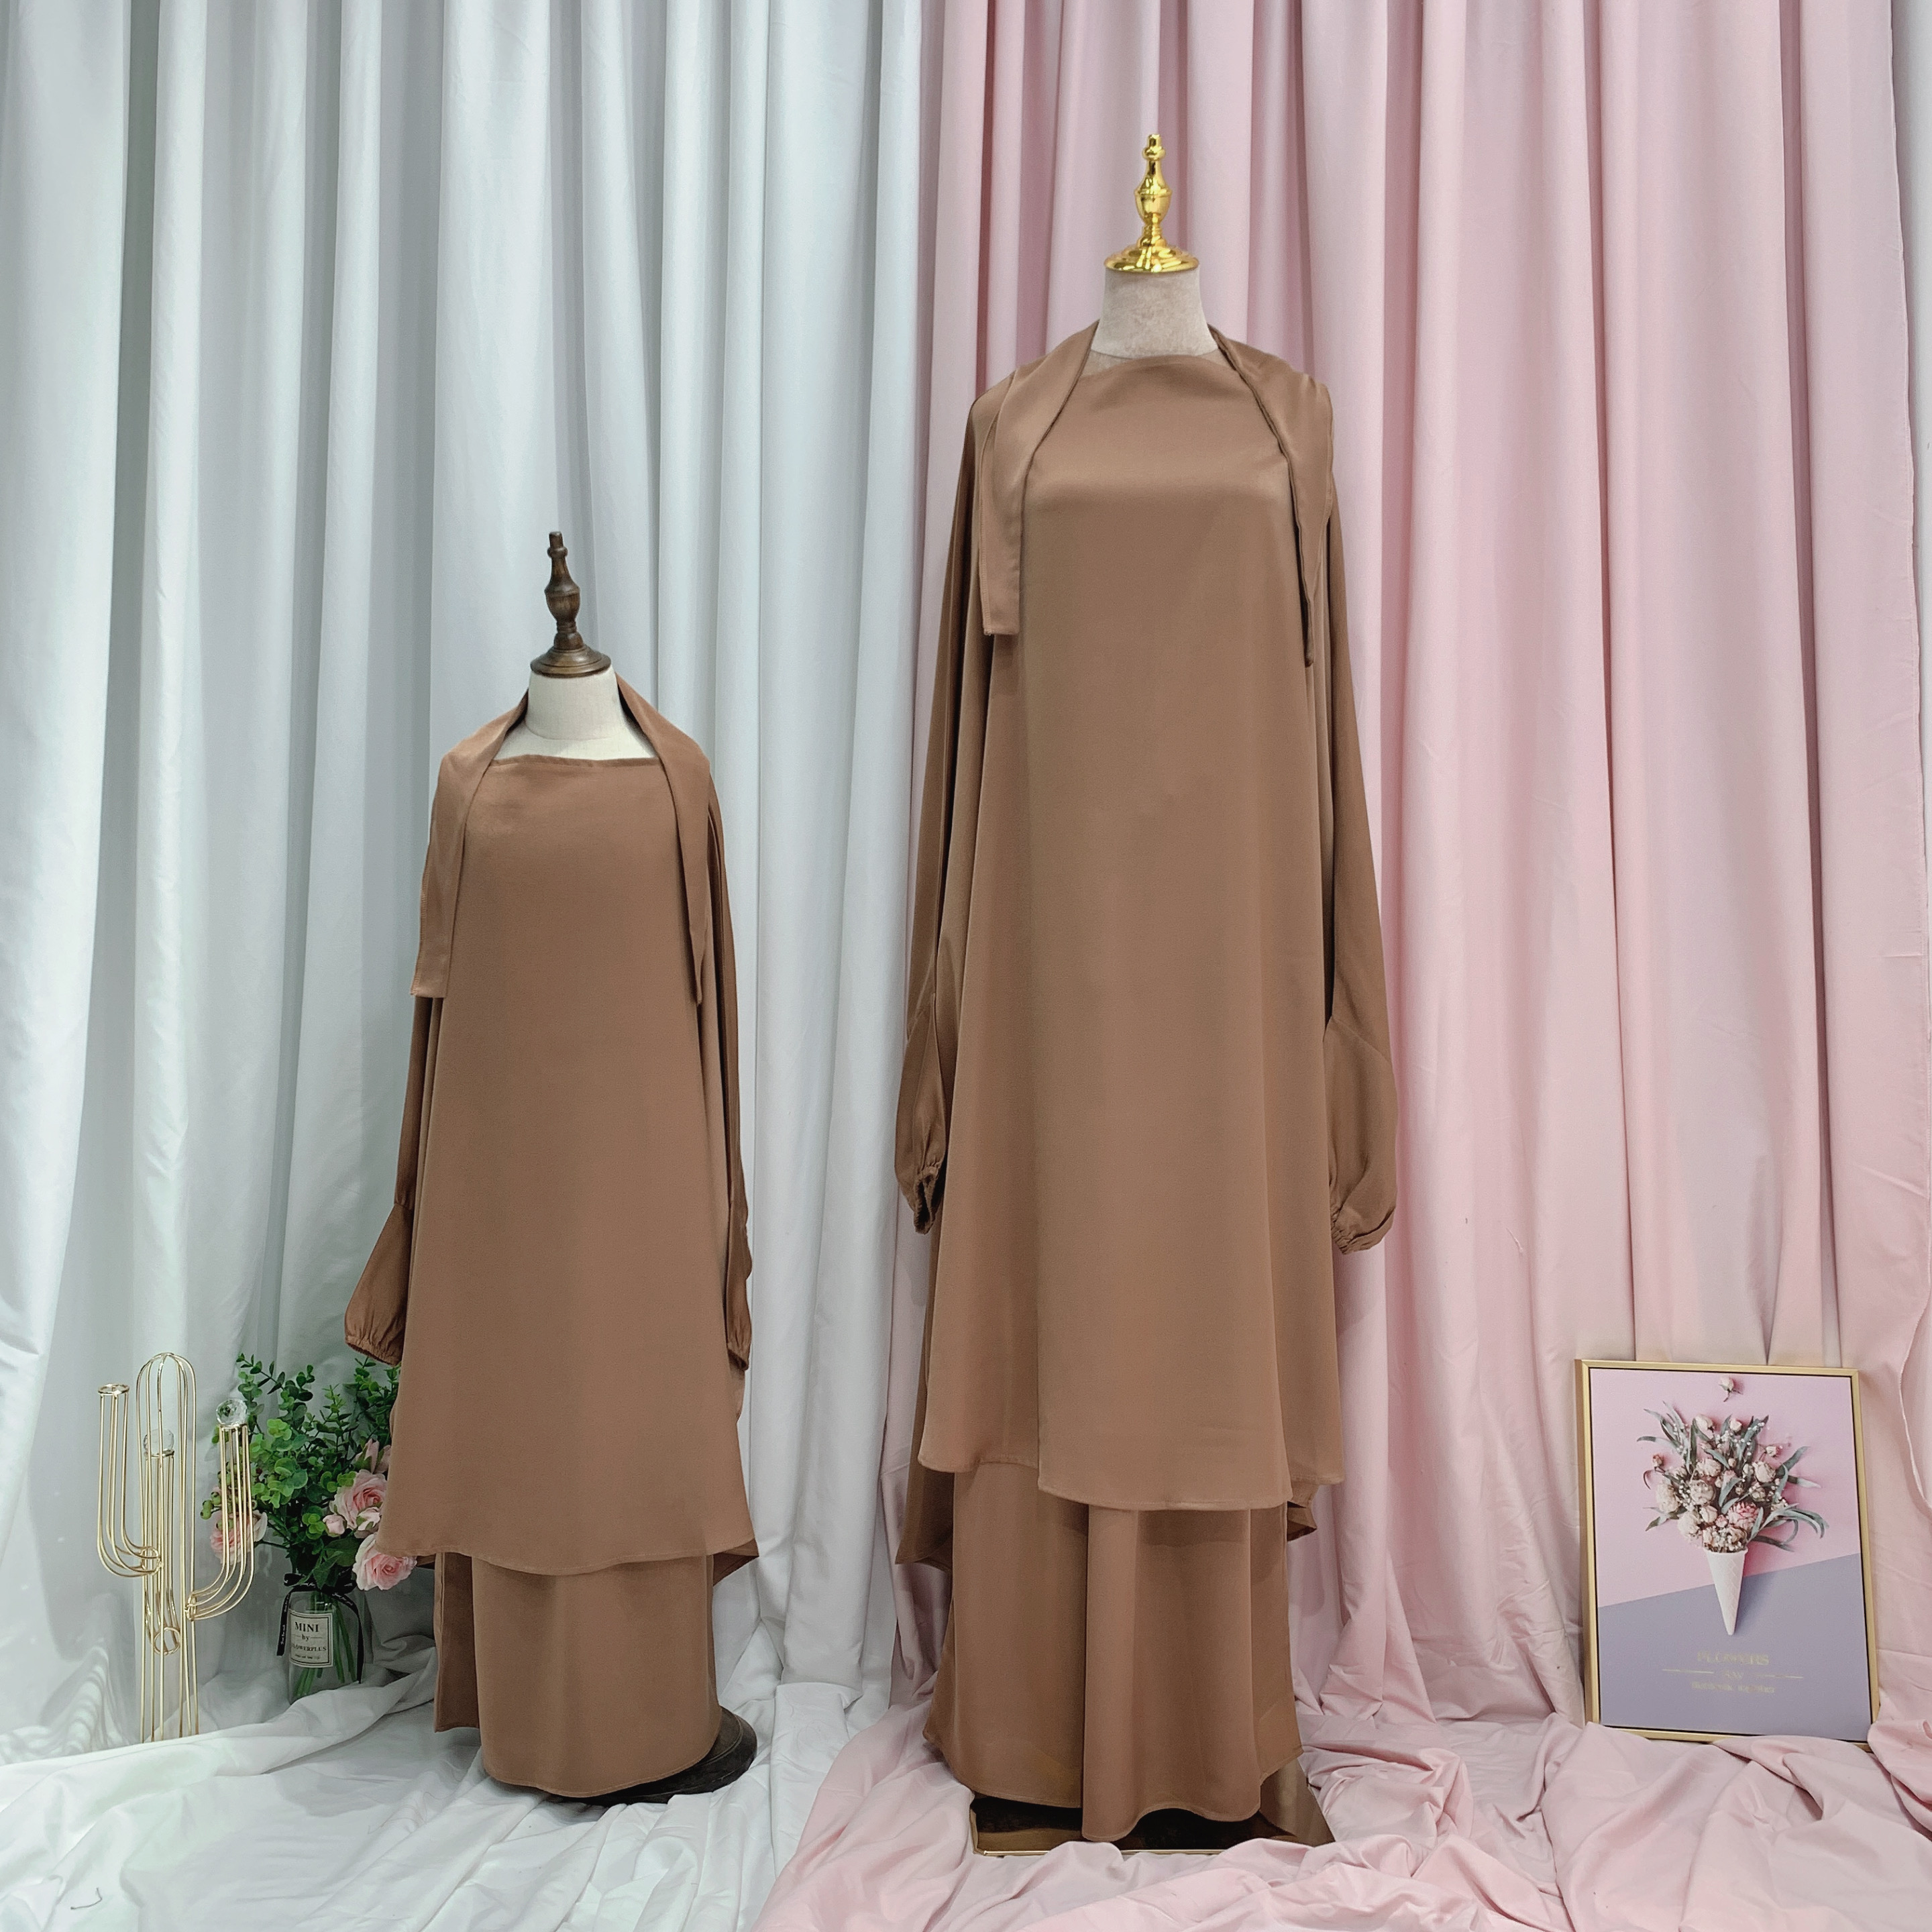 LR363 EID Abaya Dubai Turkey Solid Color Simple Modest Islamic Clothing Muslim women dress Abaya